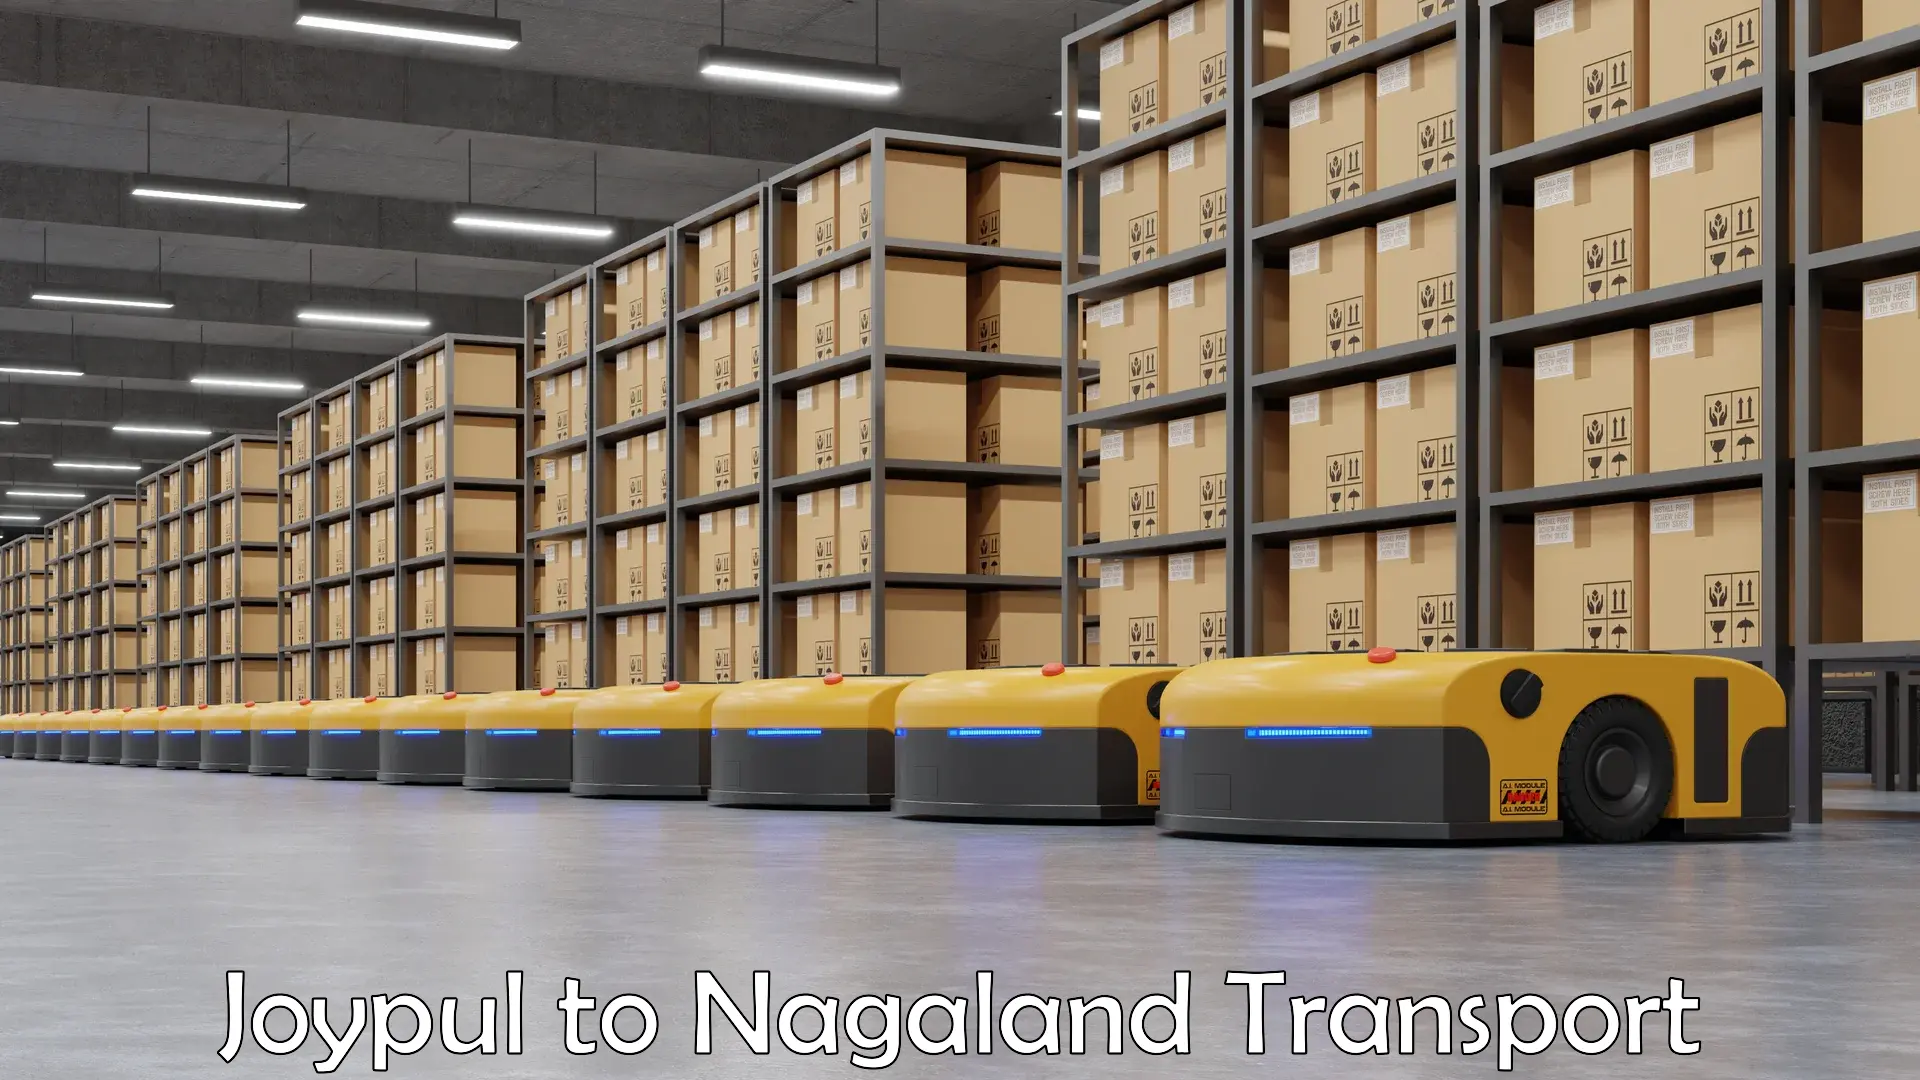 Nearest transport service Joypul to Nagaland